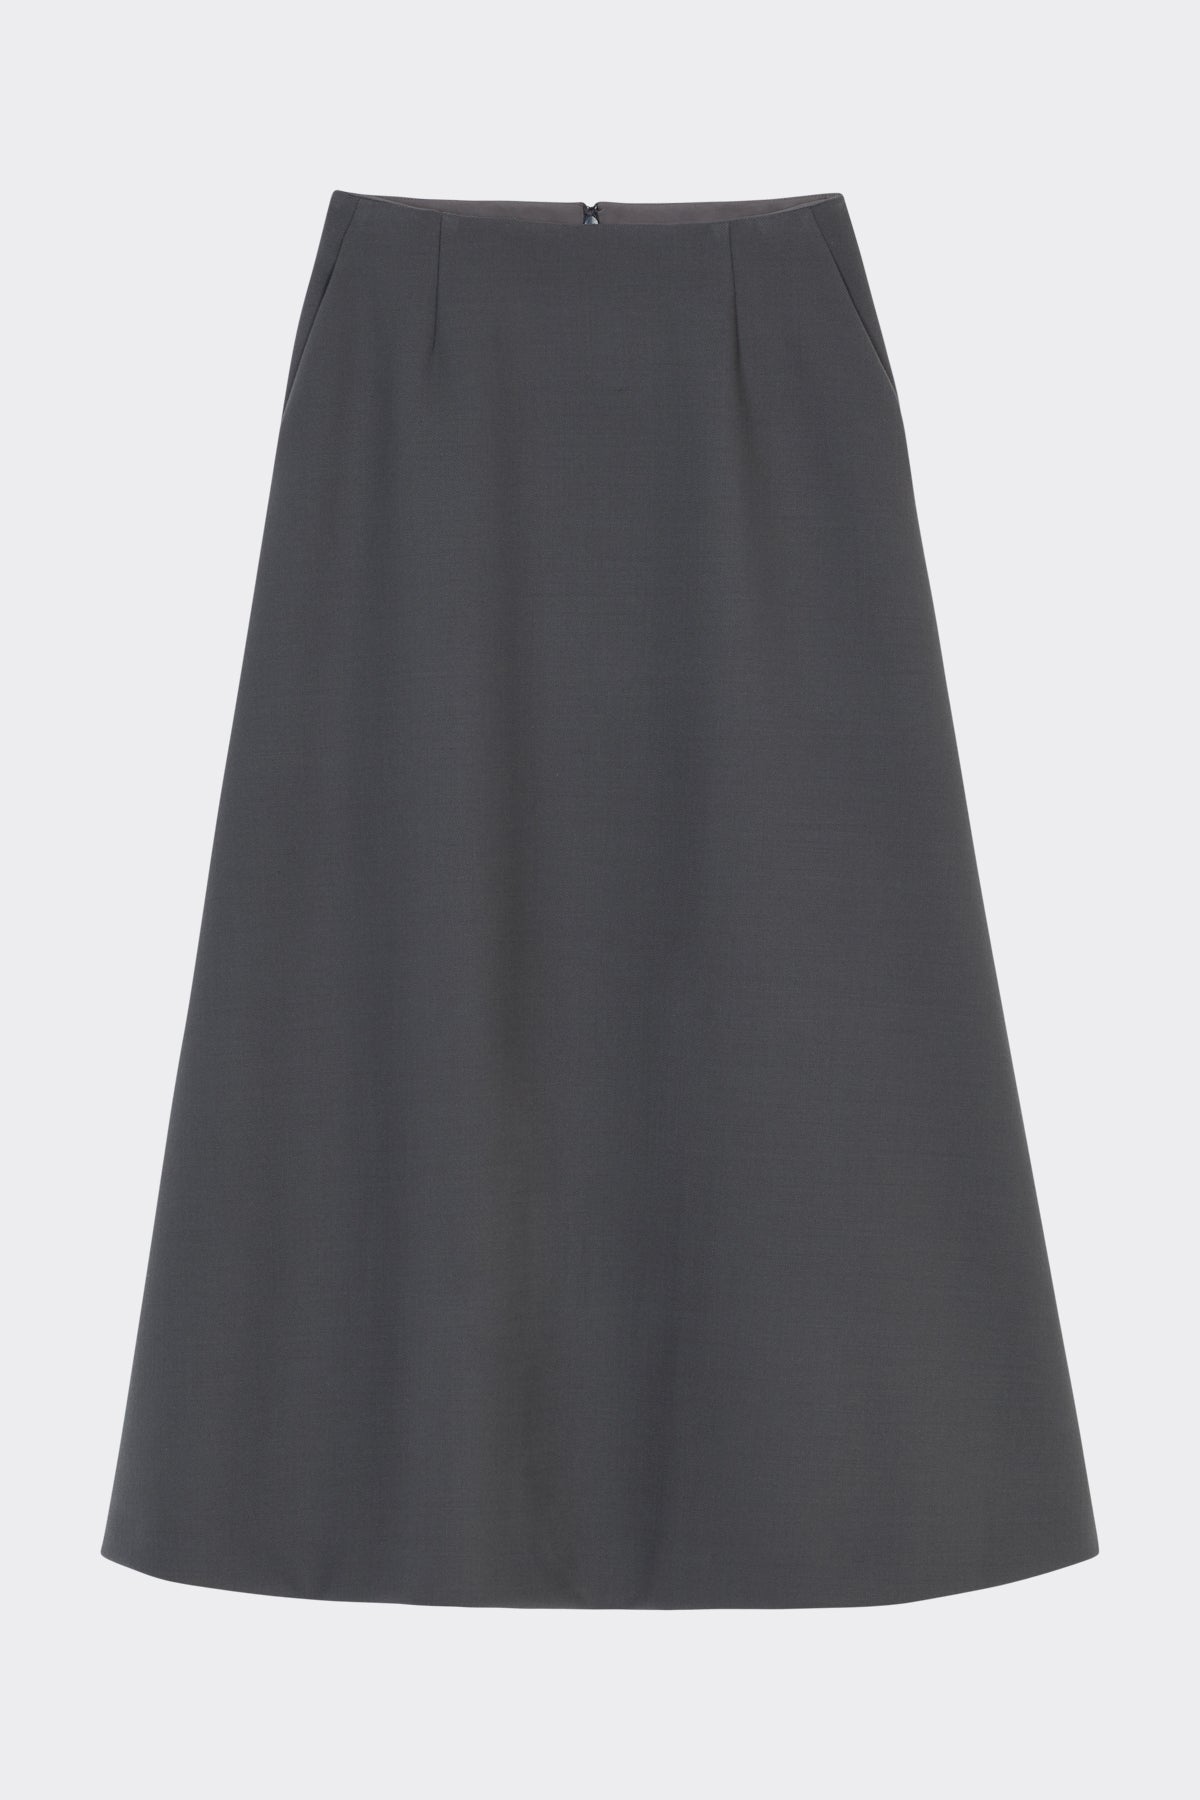 Hugette Skirt in Charcoal Grey| Noon by Noor